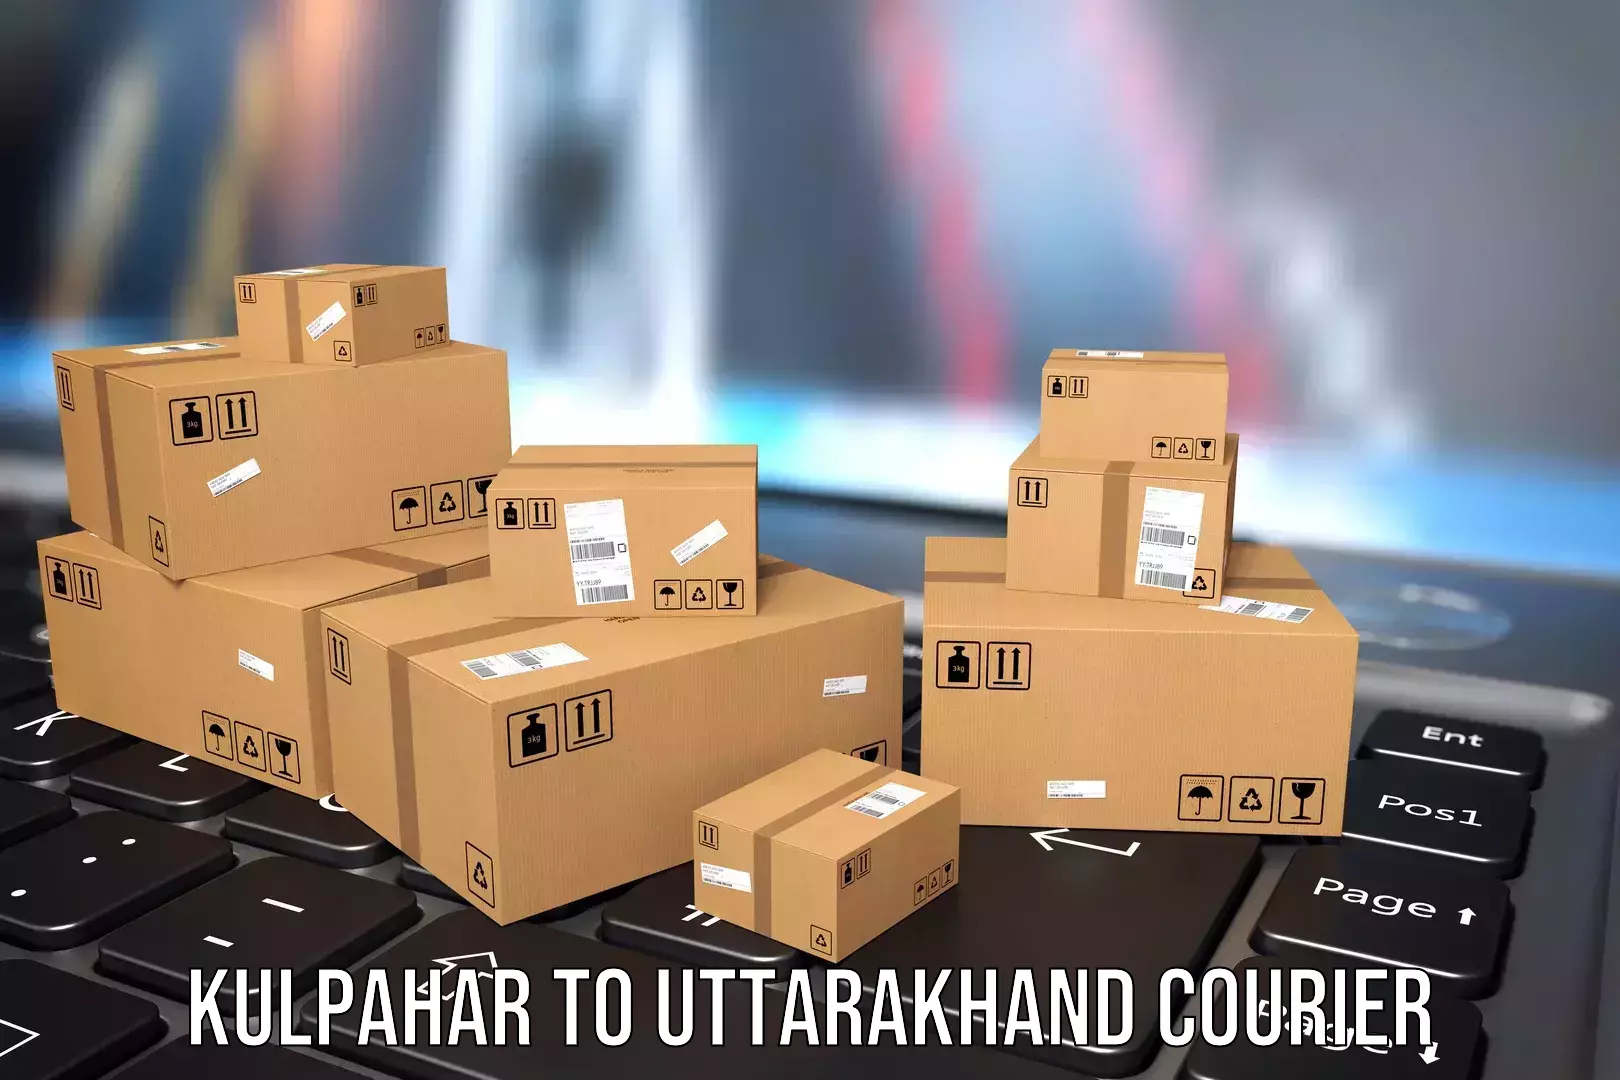 Luggage courier planning Kulpahar to Uttarakhand